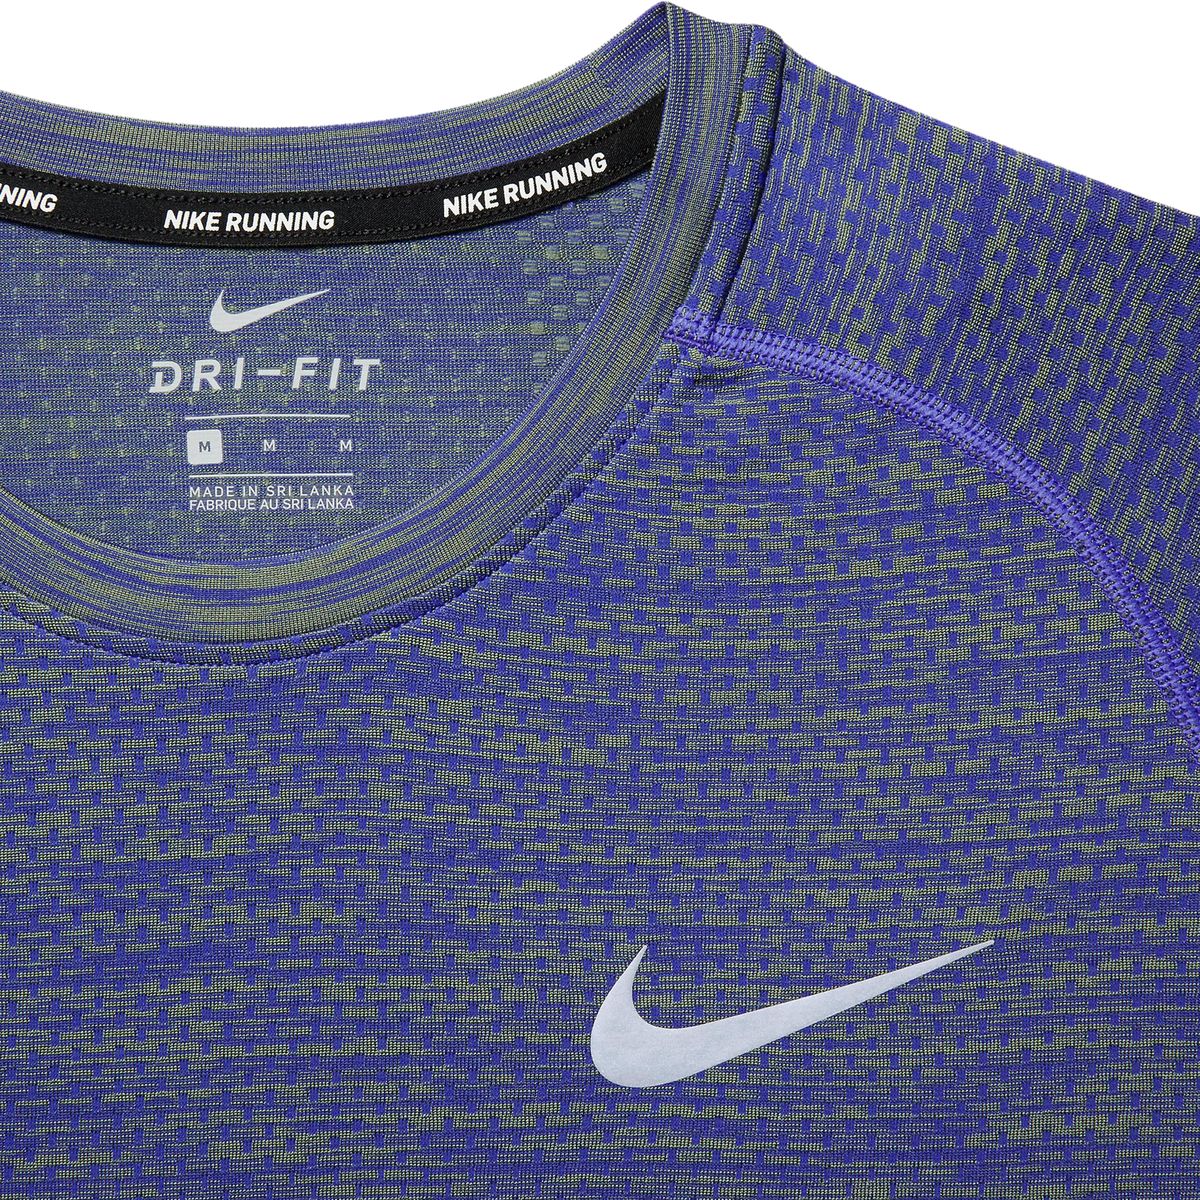 Nike Dri-FIT Knit Shirt - Men's - Clothing